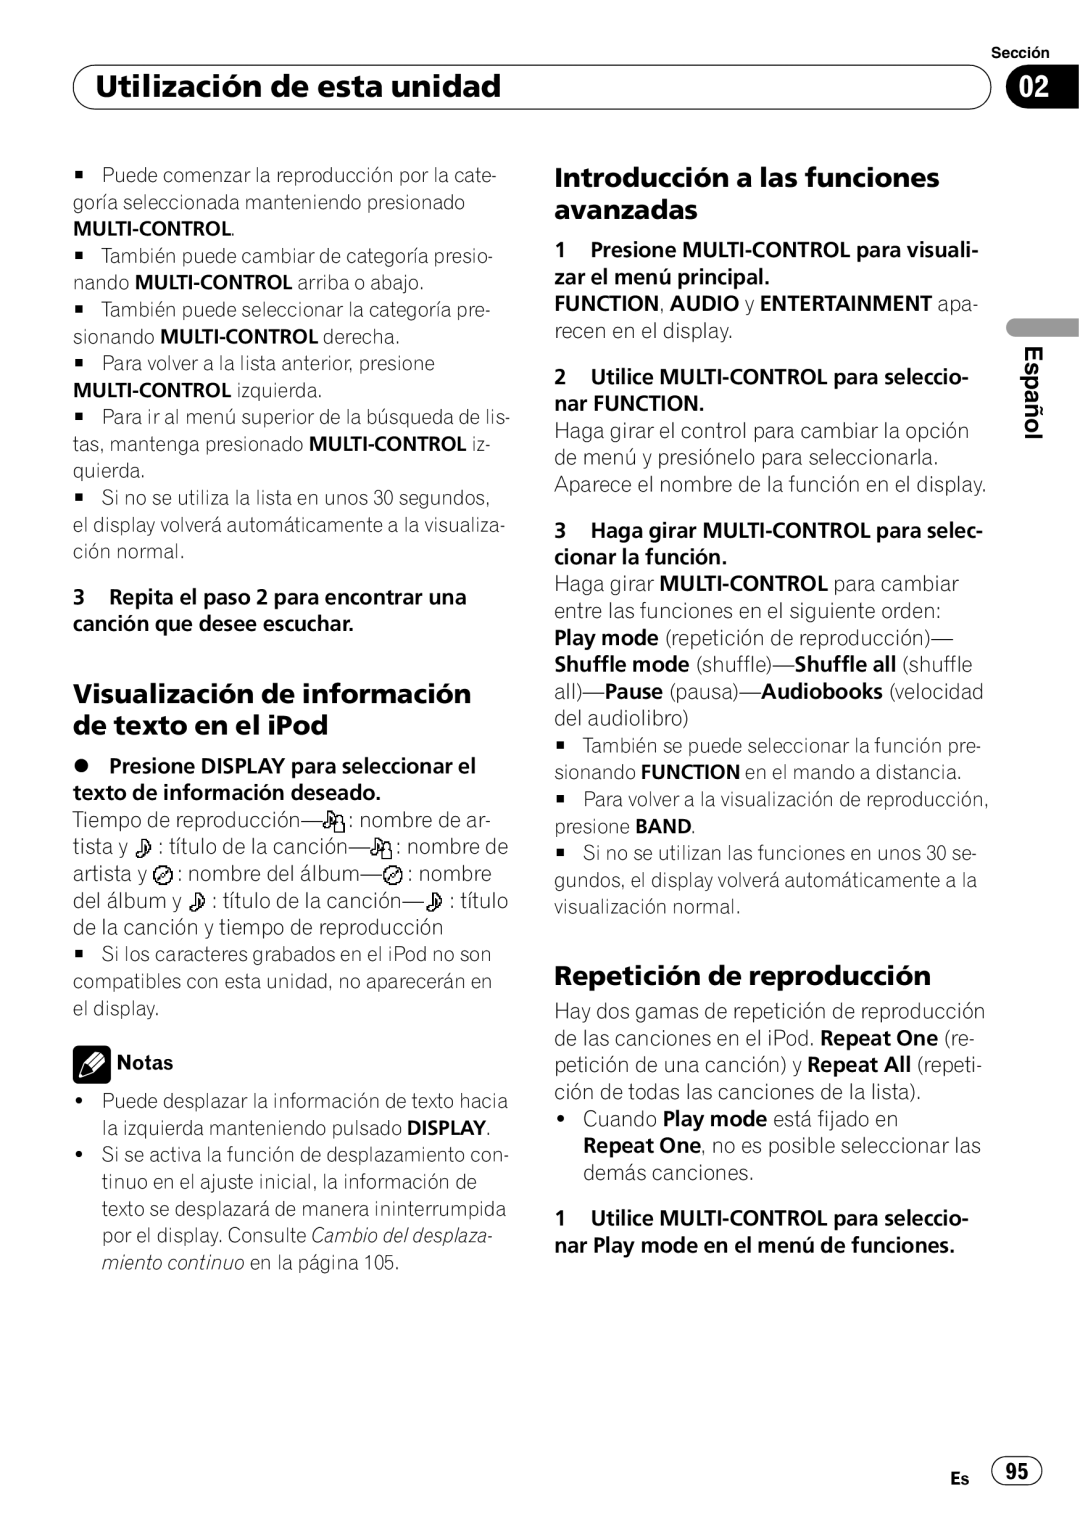 Pioneer DEH-P7900UB operation manual Visualización de información de texto en el iPod, Repetición de reproducción, Español 